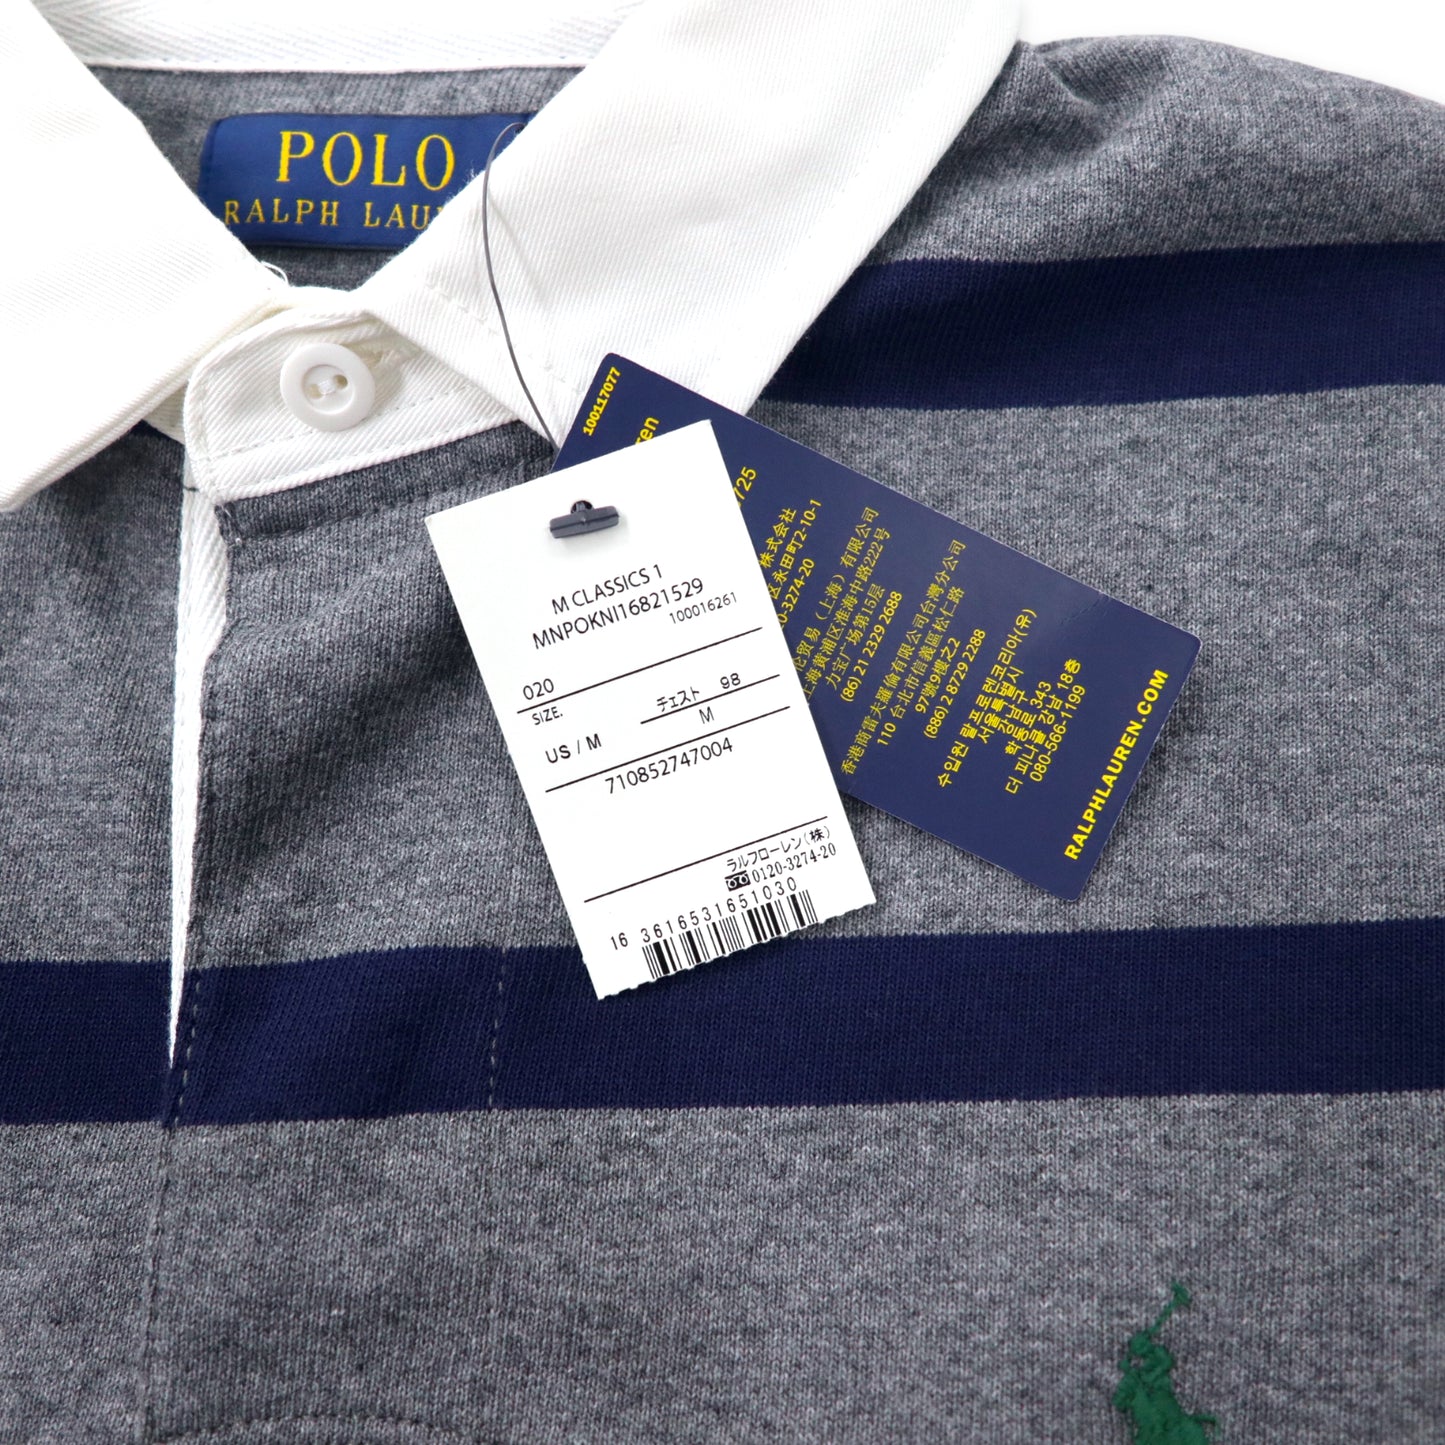 POLO RALPH LAUREL ボーダー ラガーシャツ M グレー ネイビー コットン スモールポニー刺繍 未使用品